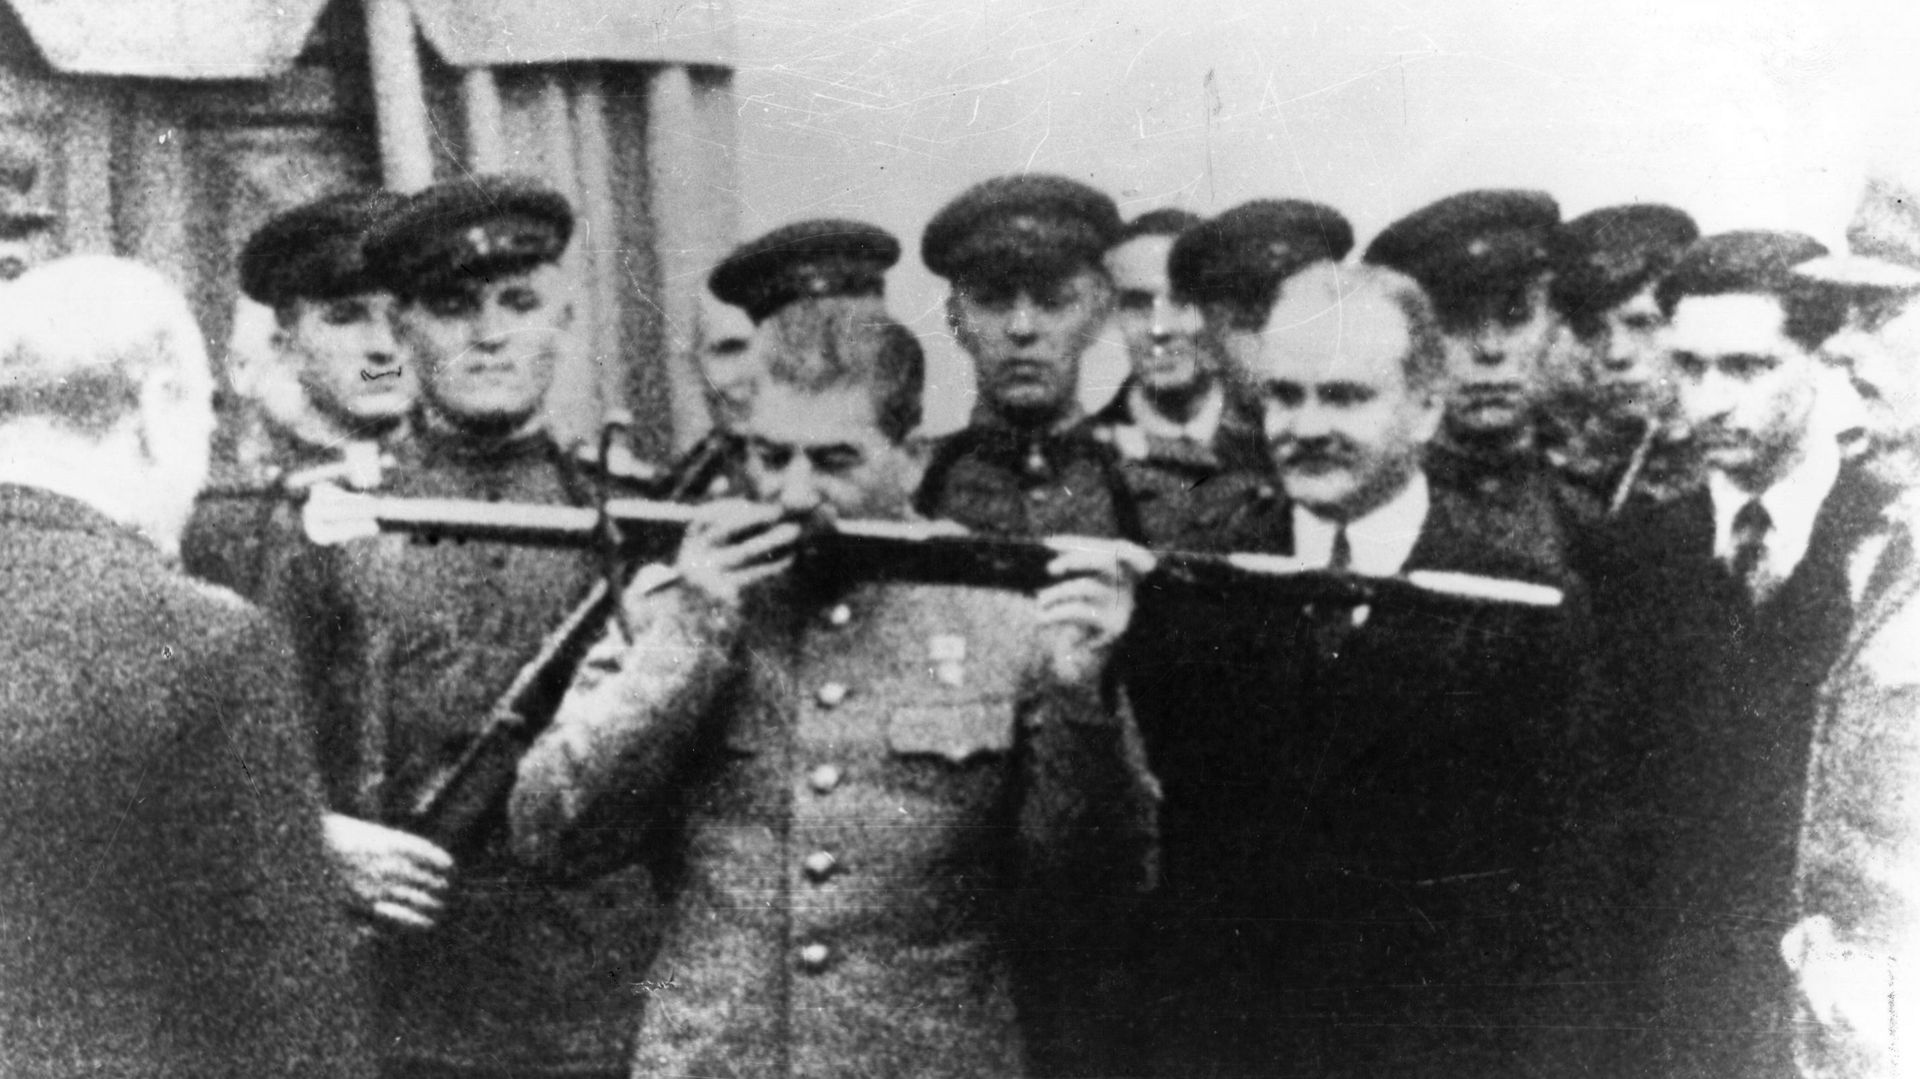 Staline reçoit de Churchill "l’épée de Stalingrad", en remerciement du peuple russe